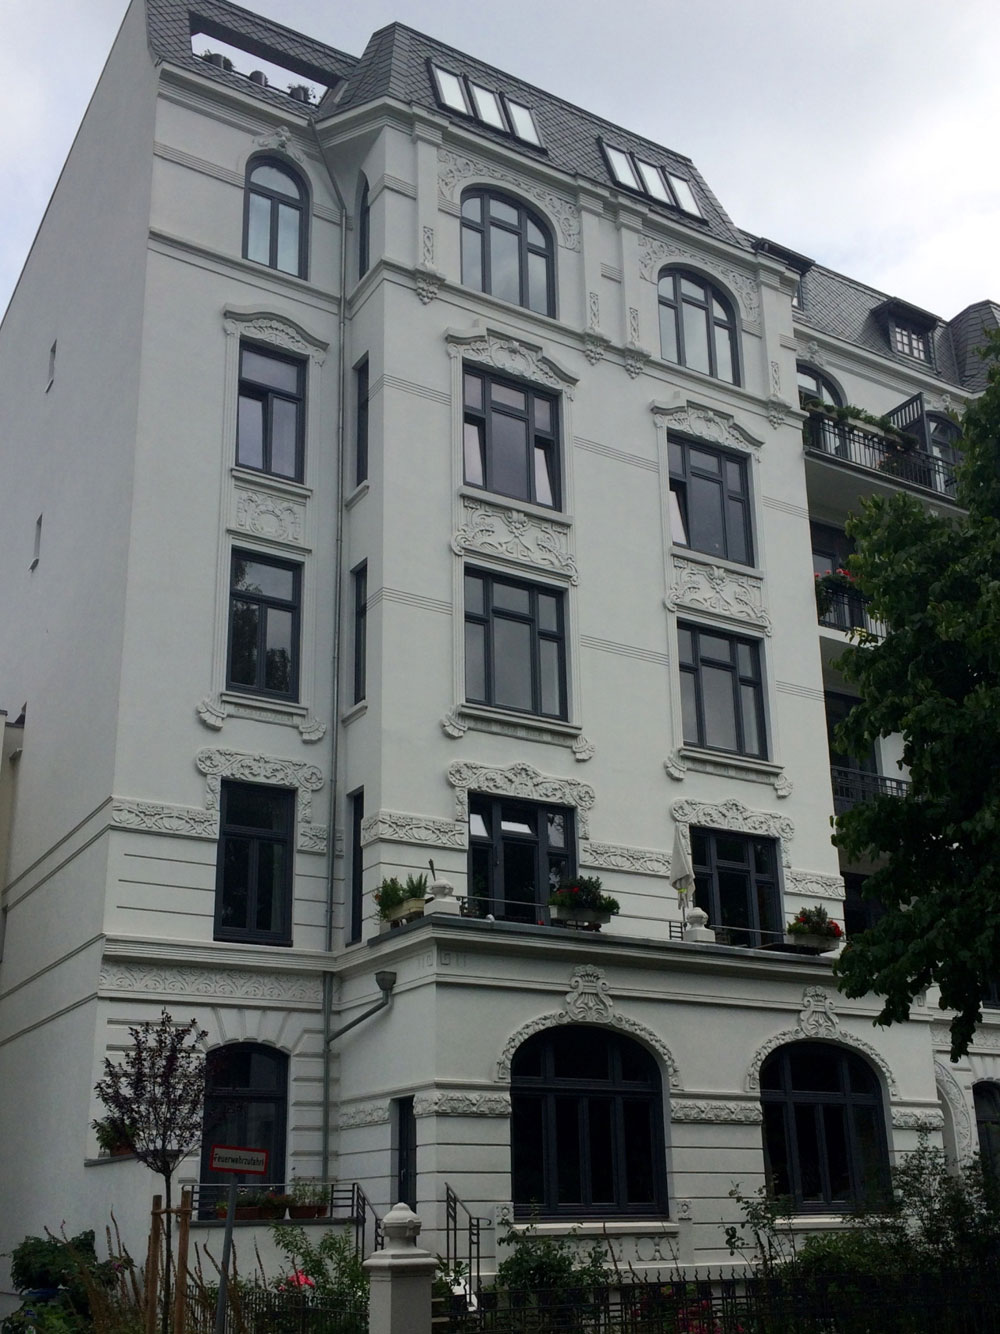 Building in Uhlenhorst